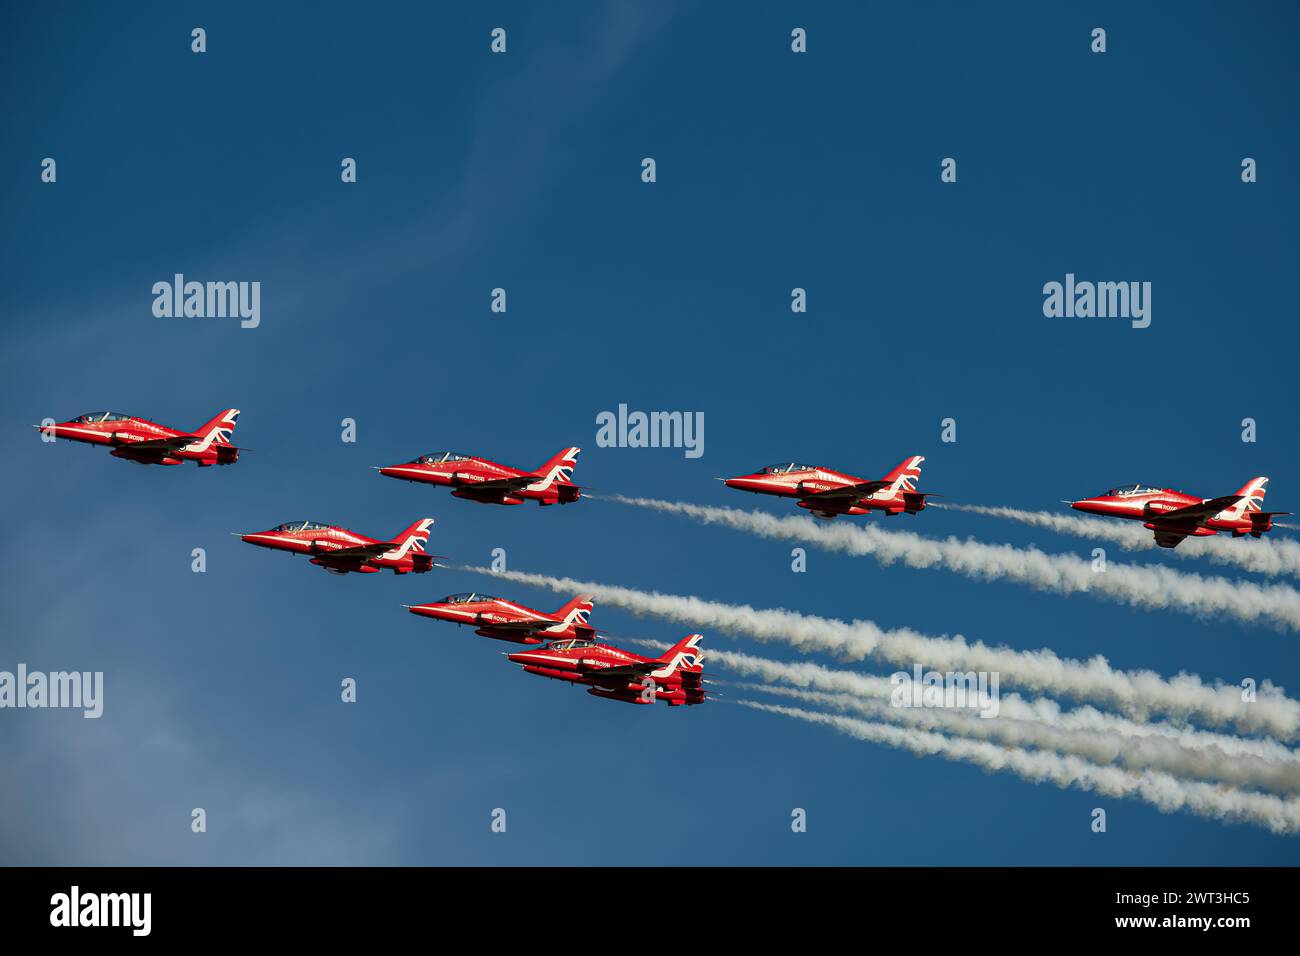 Squadrone di frecce rosse in volo contro il cielo blu e lasciando sentieri di fumo bianchi Foto Stock